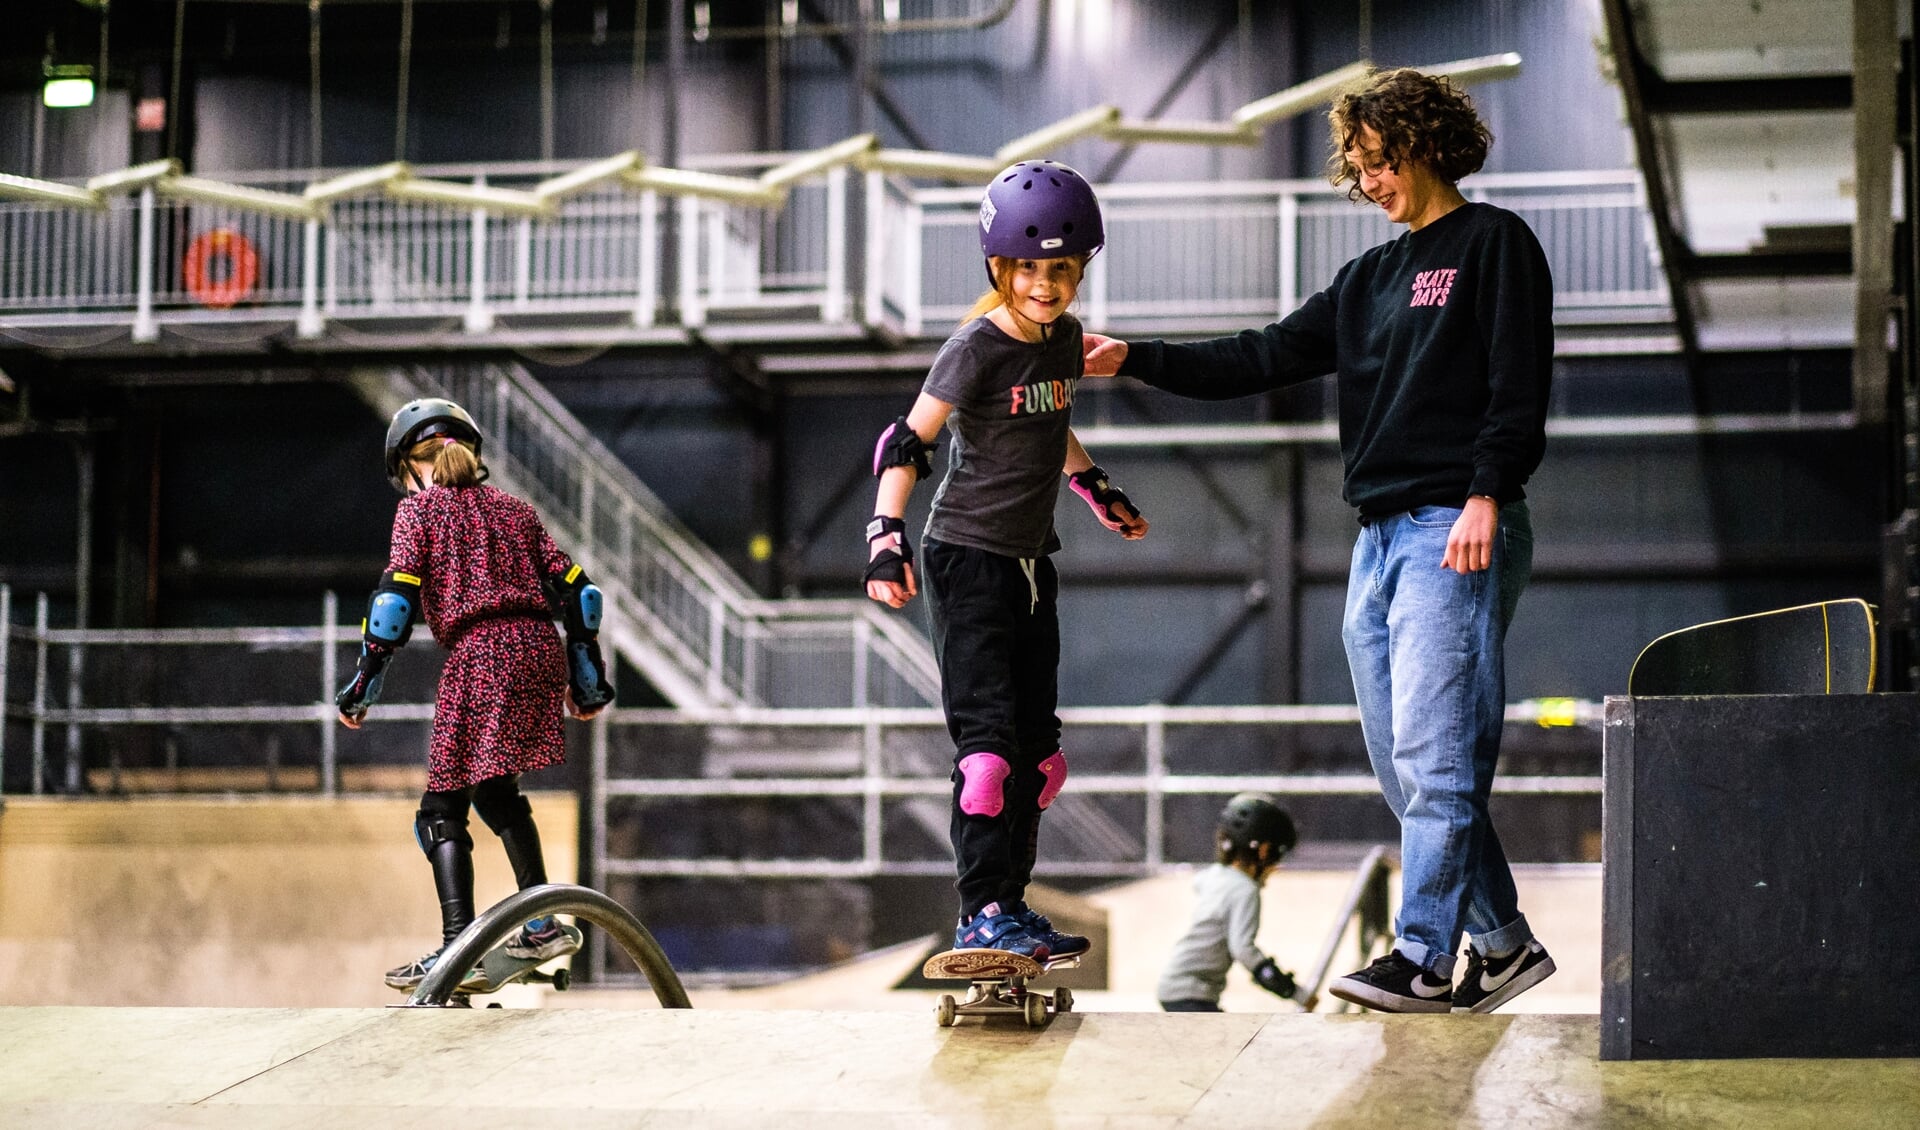 De waarheid vertellen impuls Rekwisieten gratis proefles skateboarden voor iedereen vanaf 6 jaar - Nieuws uit de  regio Amersfoort